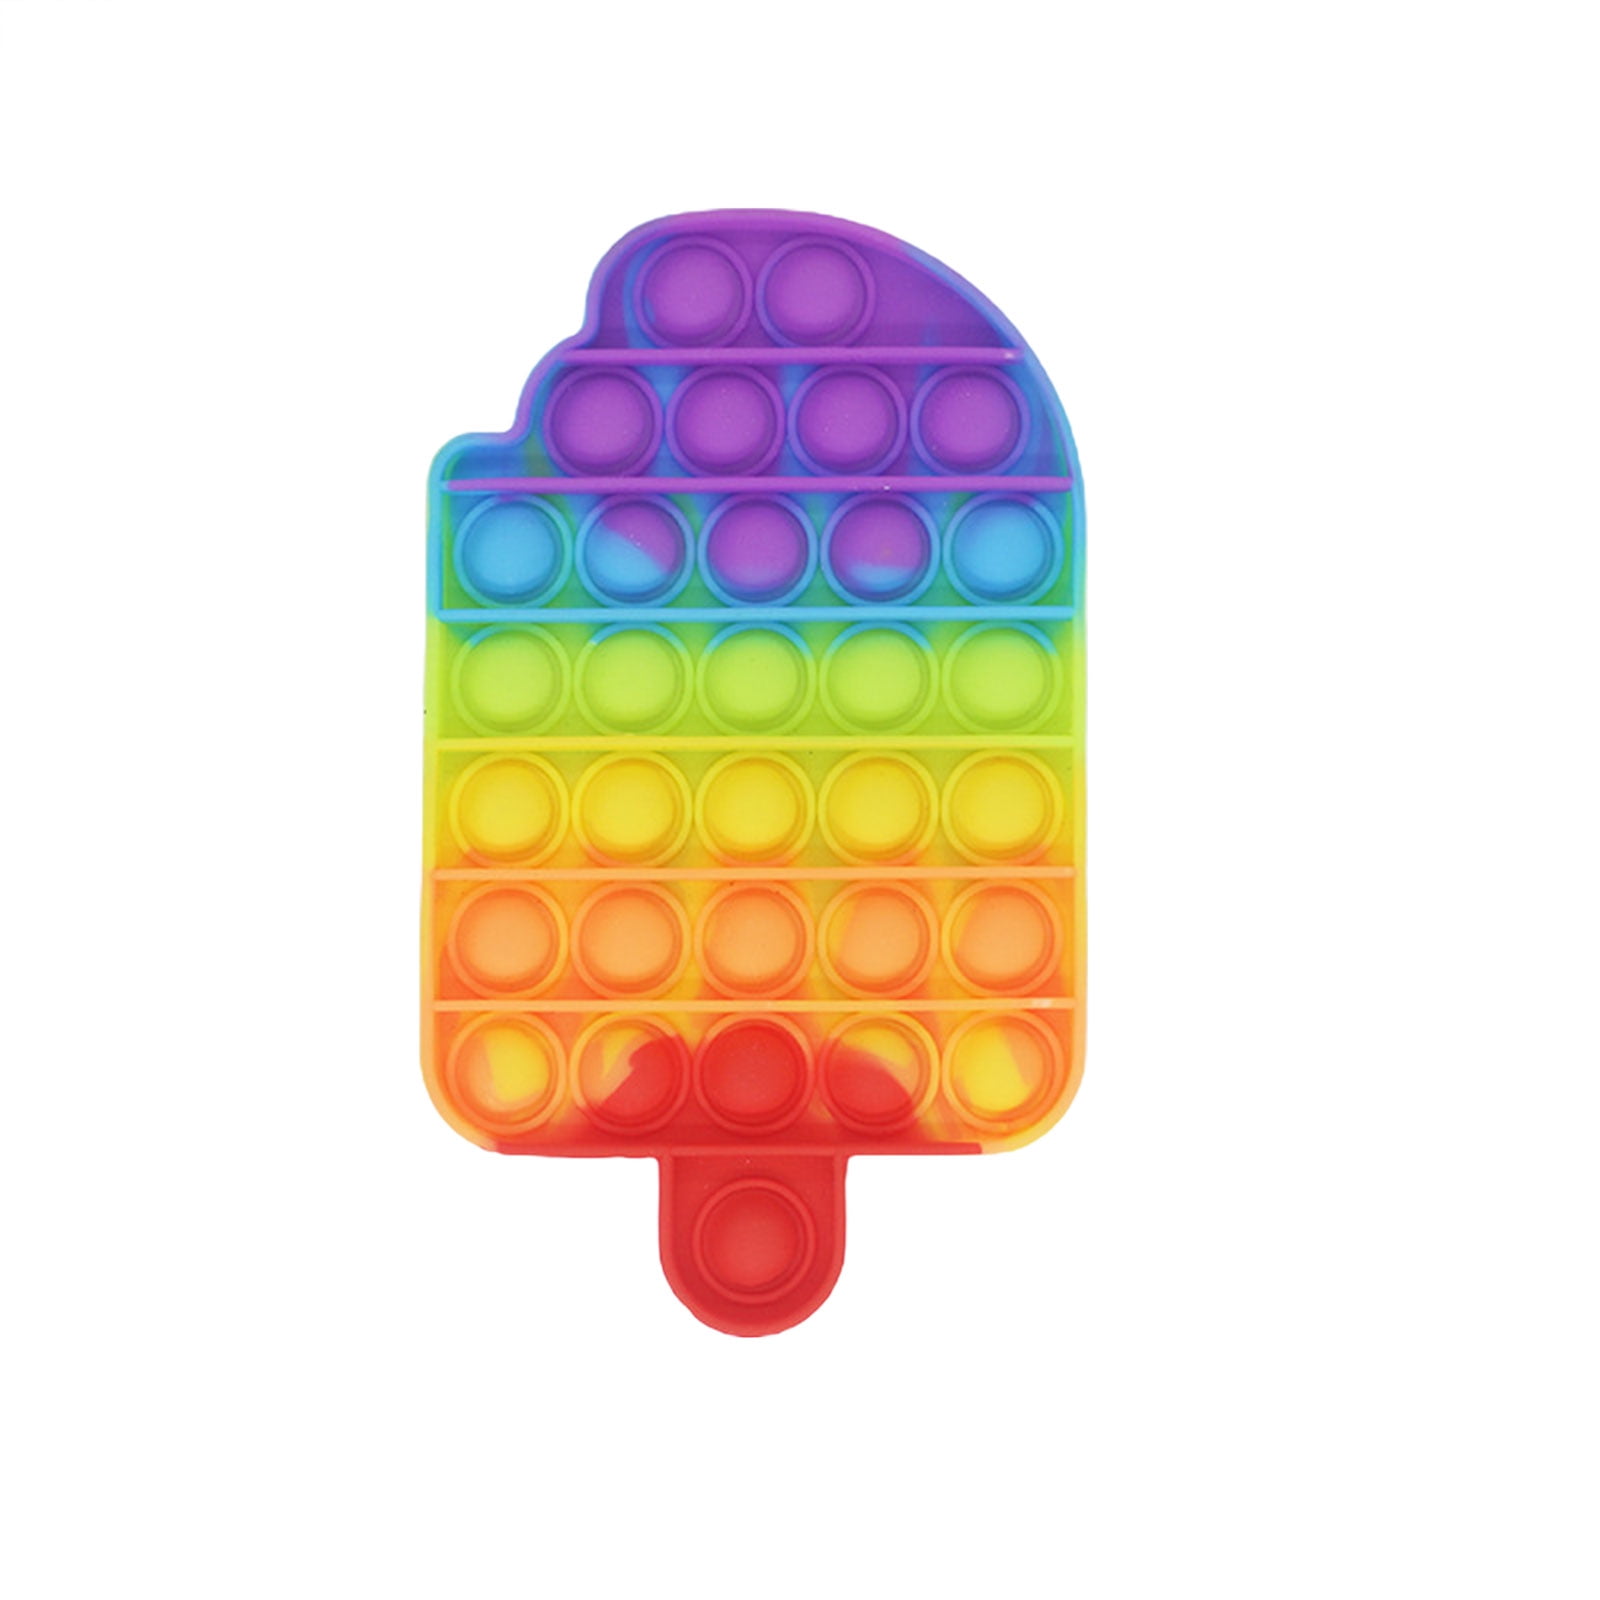 Details about   Push Bubble It Sensory Fidget Toy Autism Stress Relief Game USA 